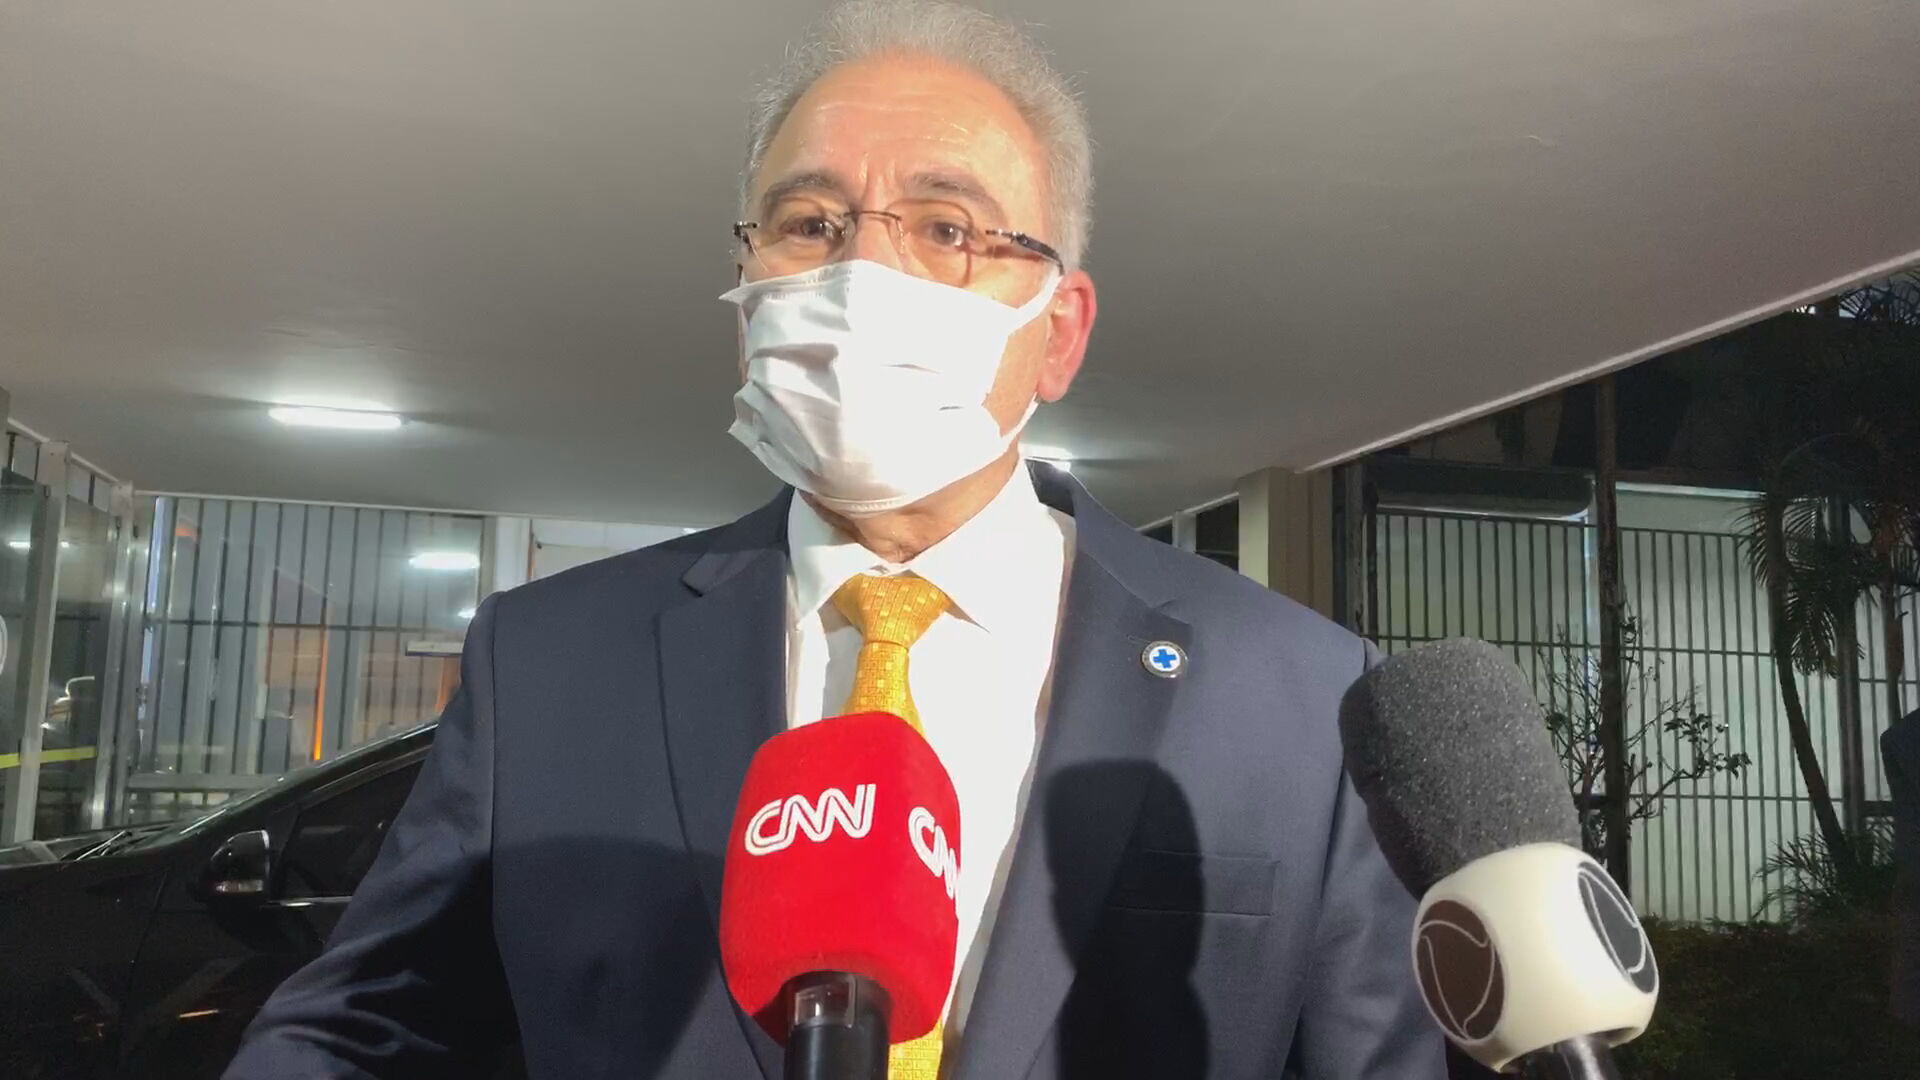 O ministro da Saúde, Marcelo Queiroga, falou com a reportagem da CNN